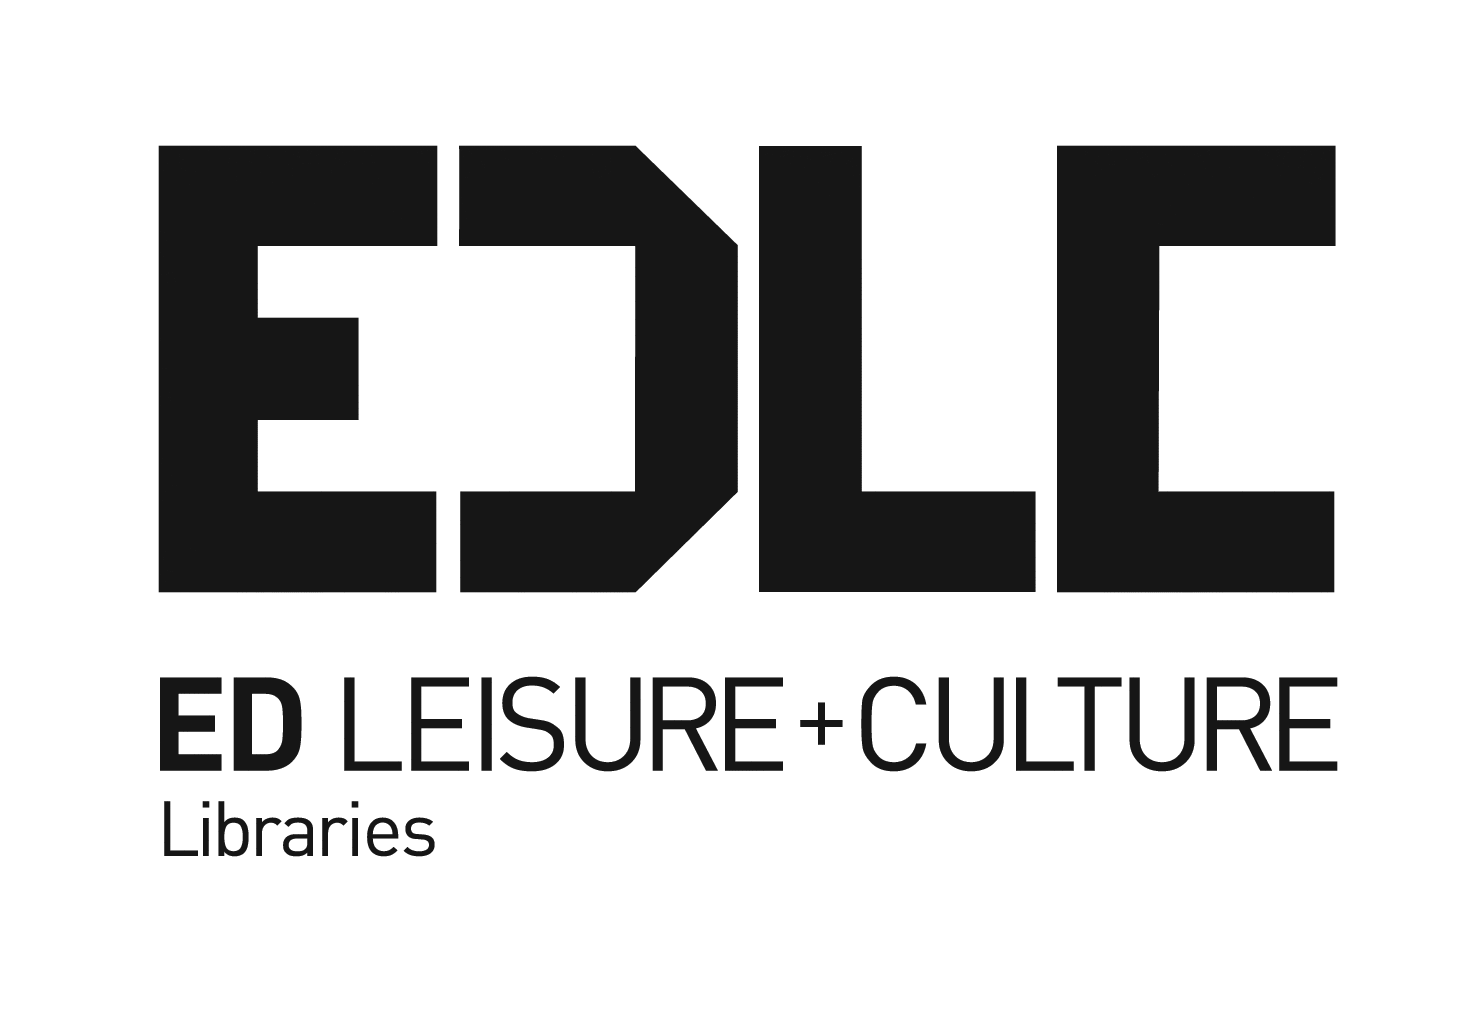 edlc libraries_mono